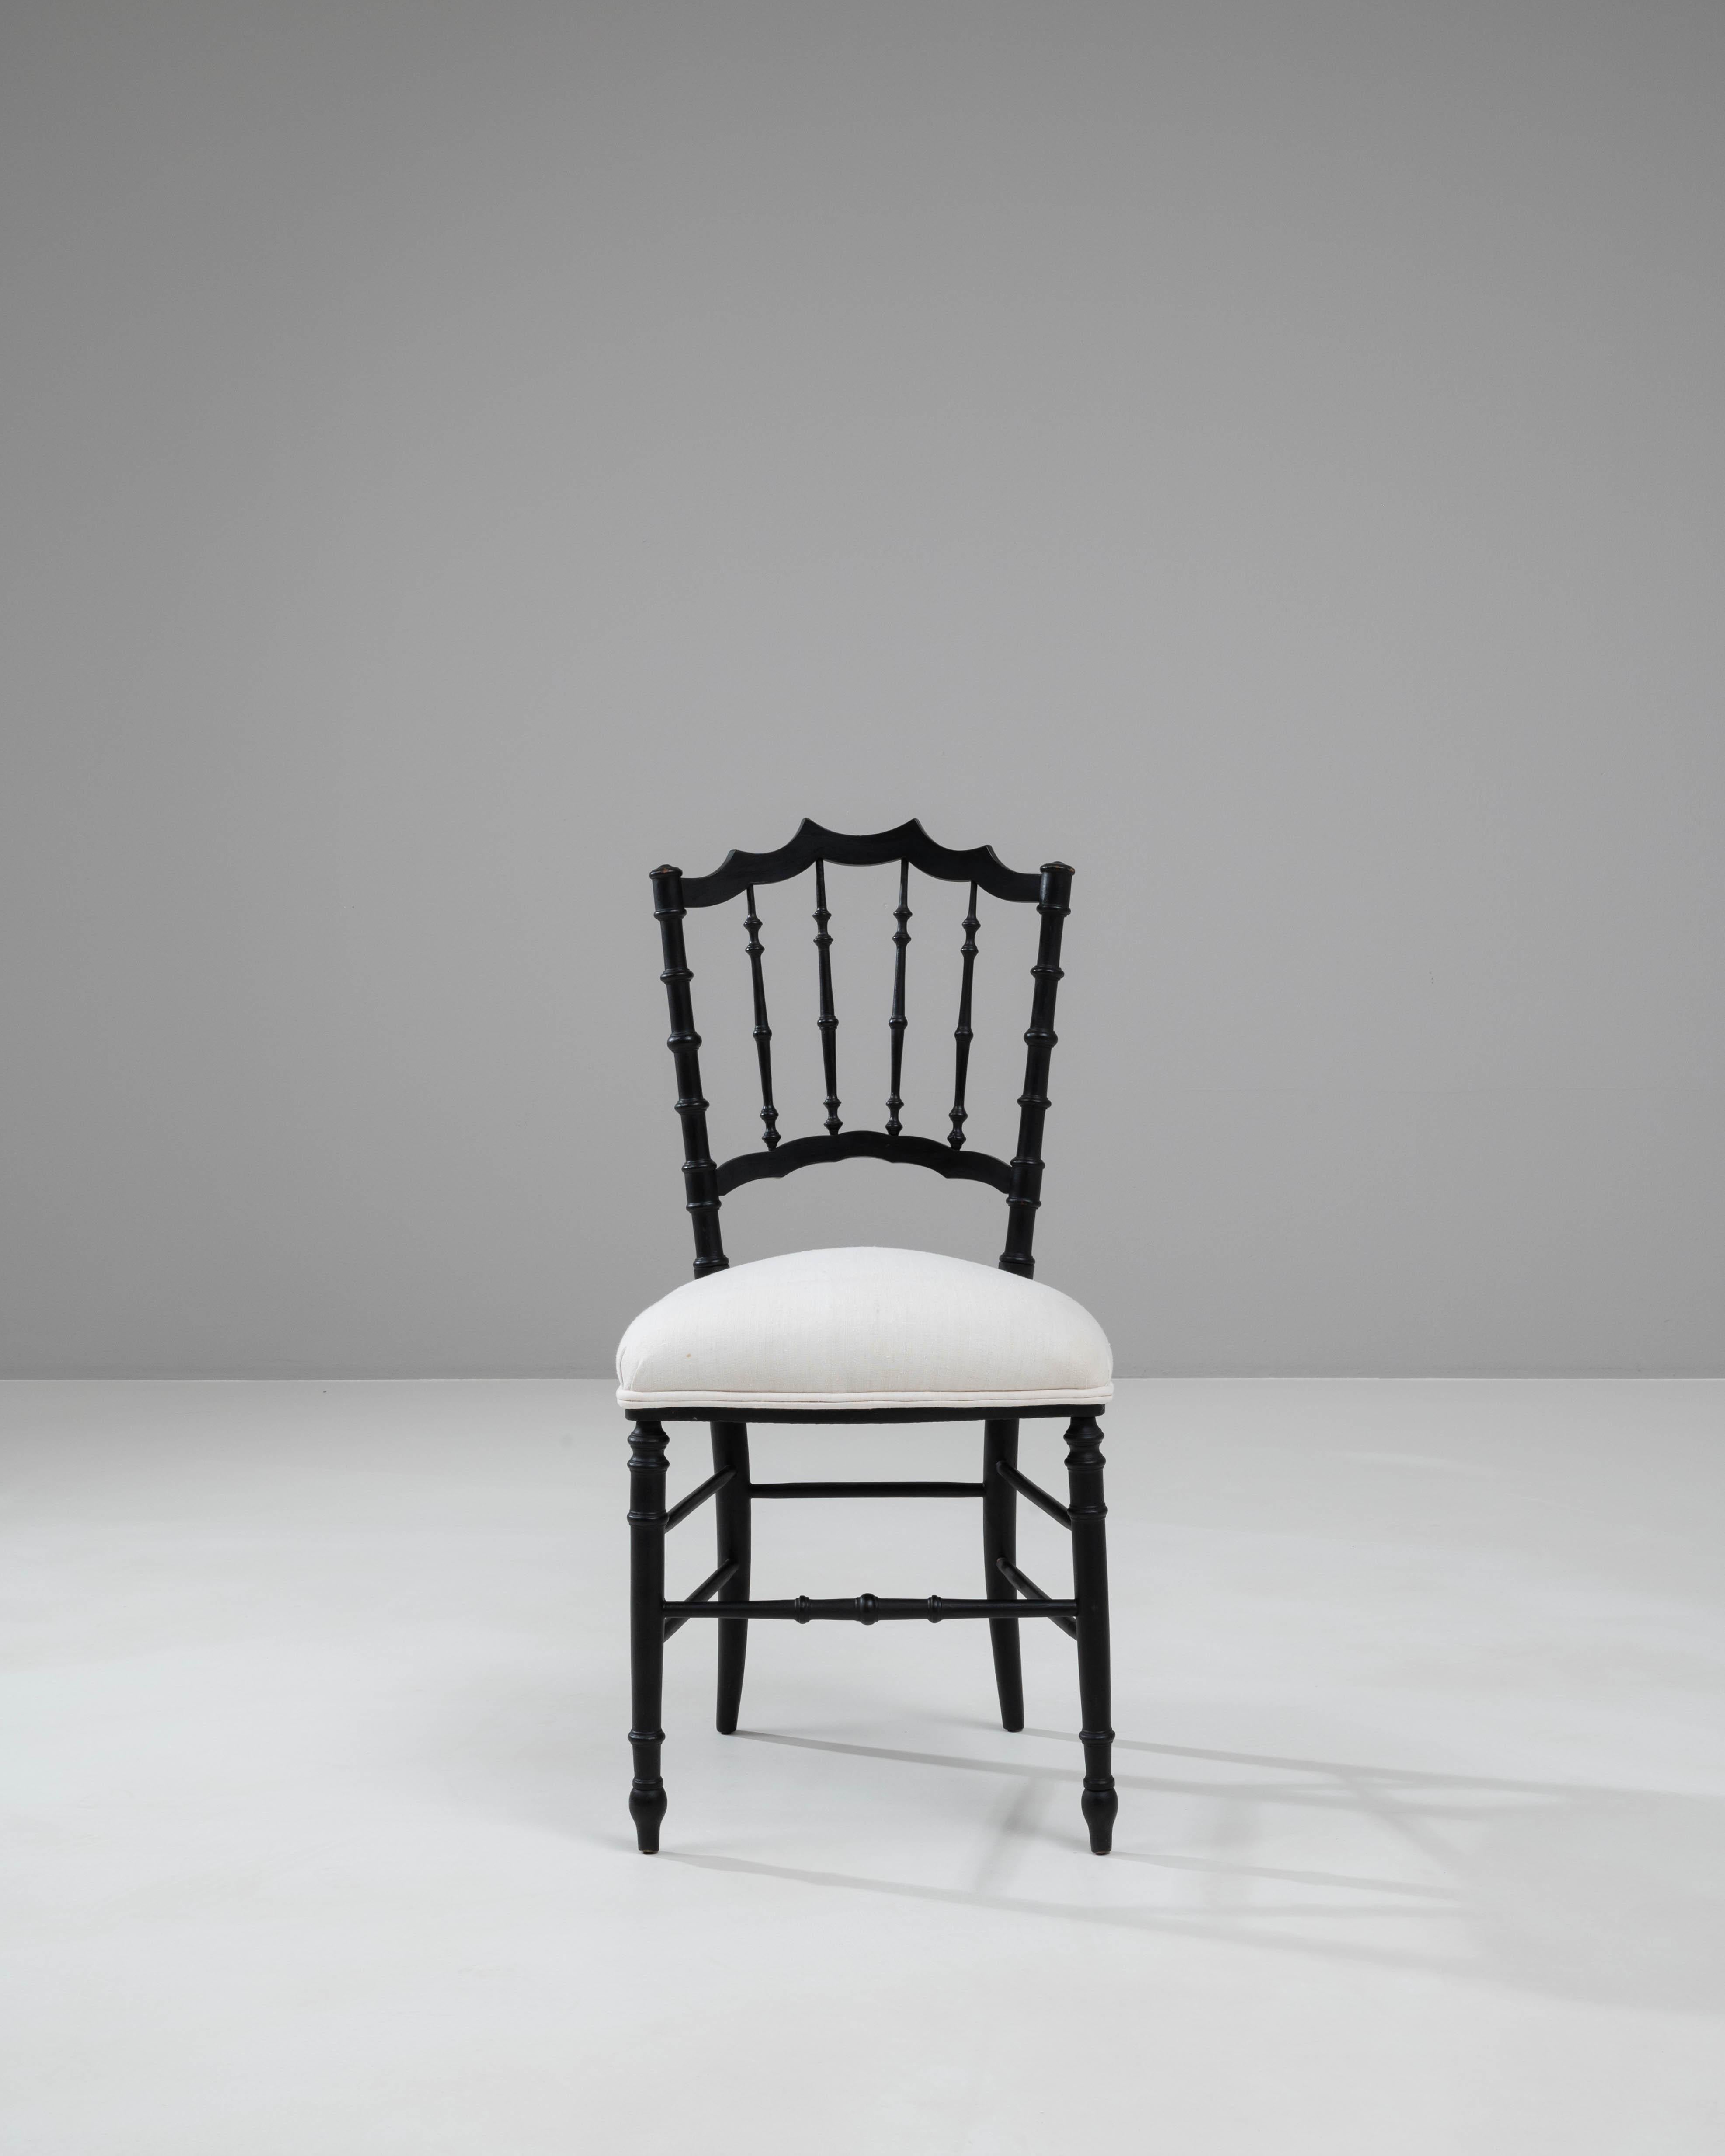 Dieser französische Holzstuhl aus dem 20. Jahrhundert ist ein Musterbeispiel für klassische Eleganz und anspruchsvolles Design. Das Gestell ist in einem eleganten, matten Schwarz lackiert und weist wunderschön gearbeitete Spindeldetails und eine